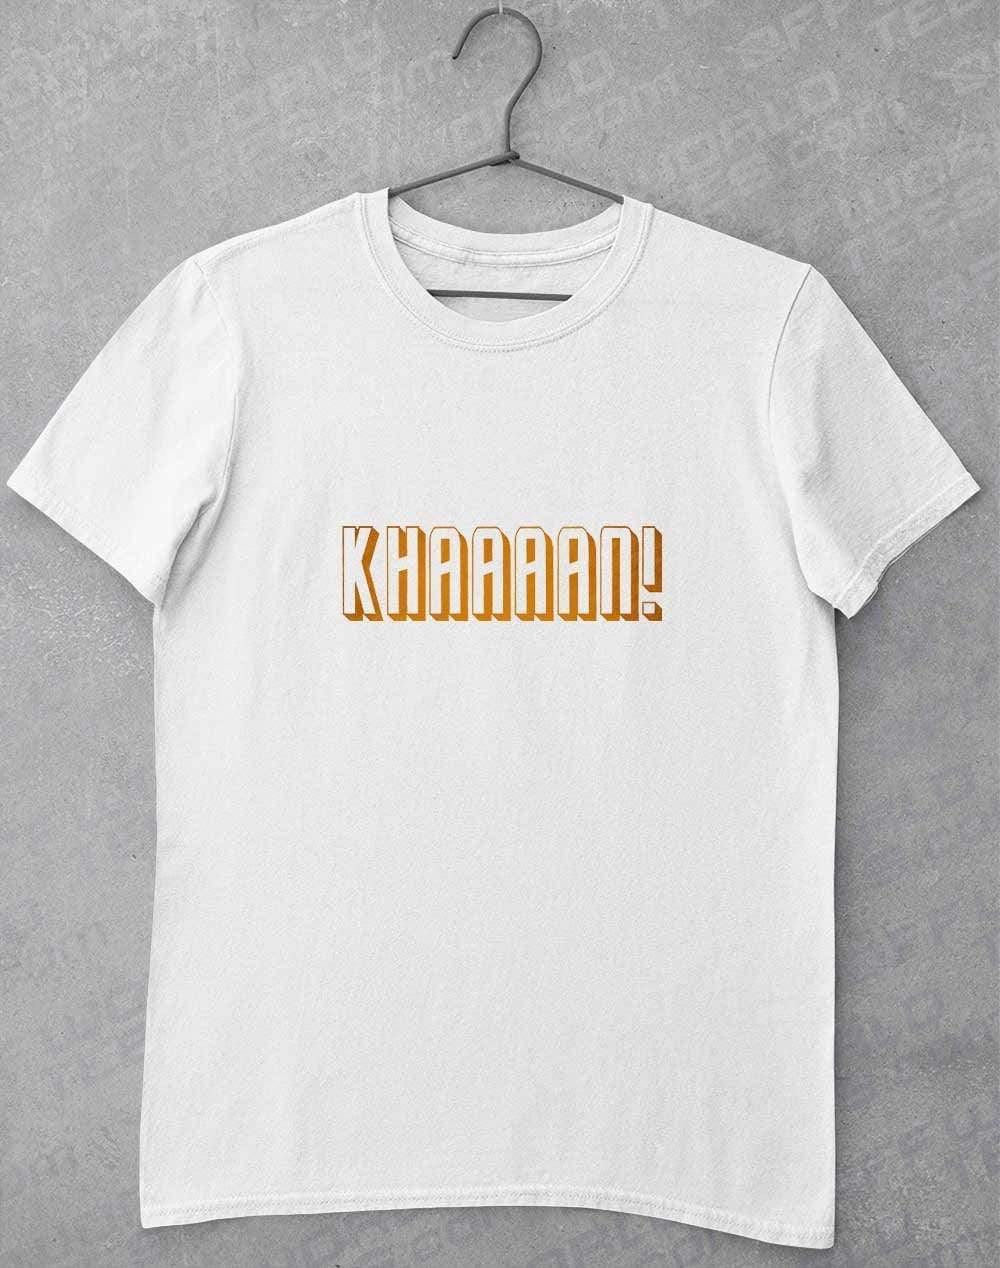 KHAAAAAN T-Shirt S / White  - Off World Tees